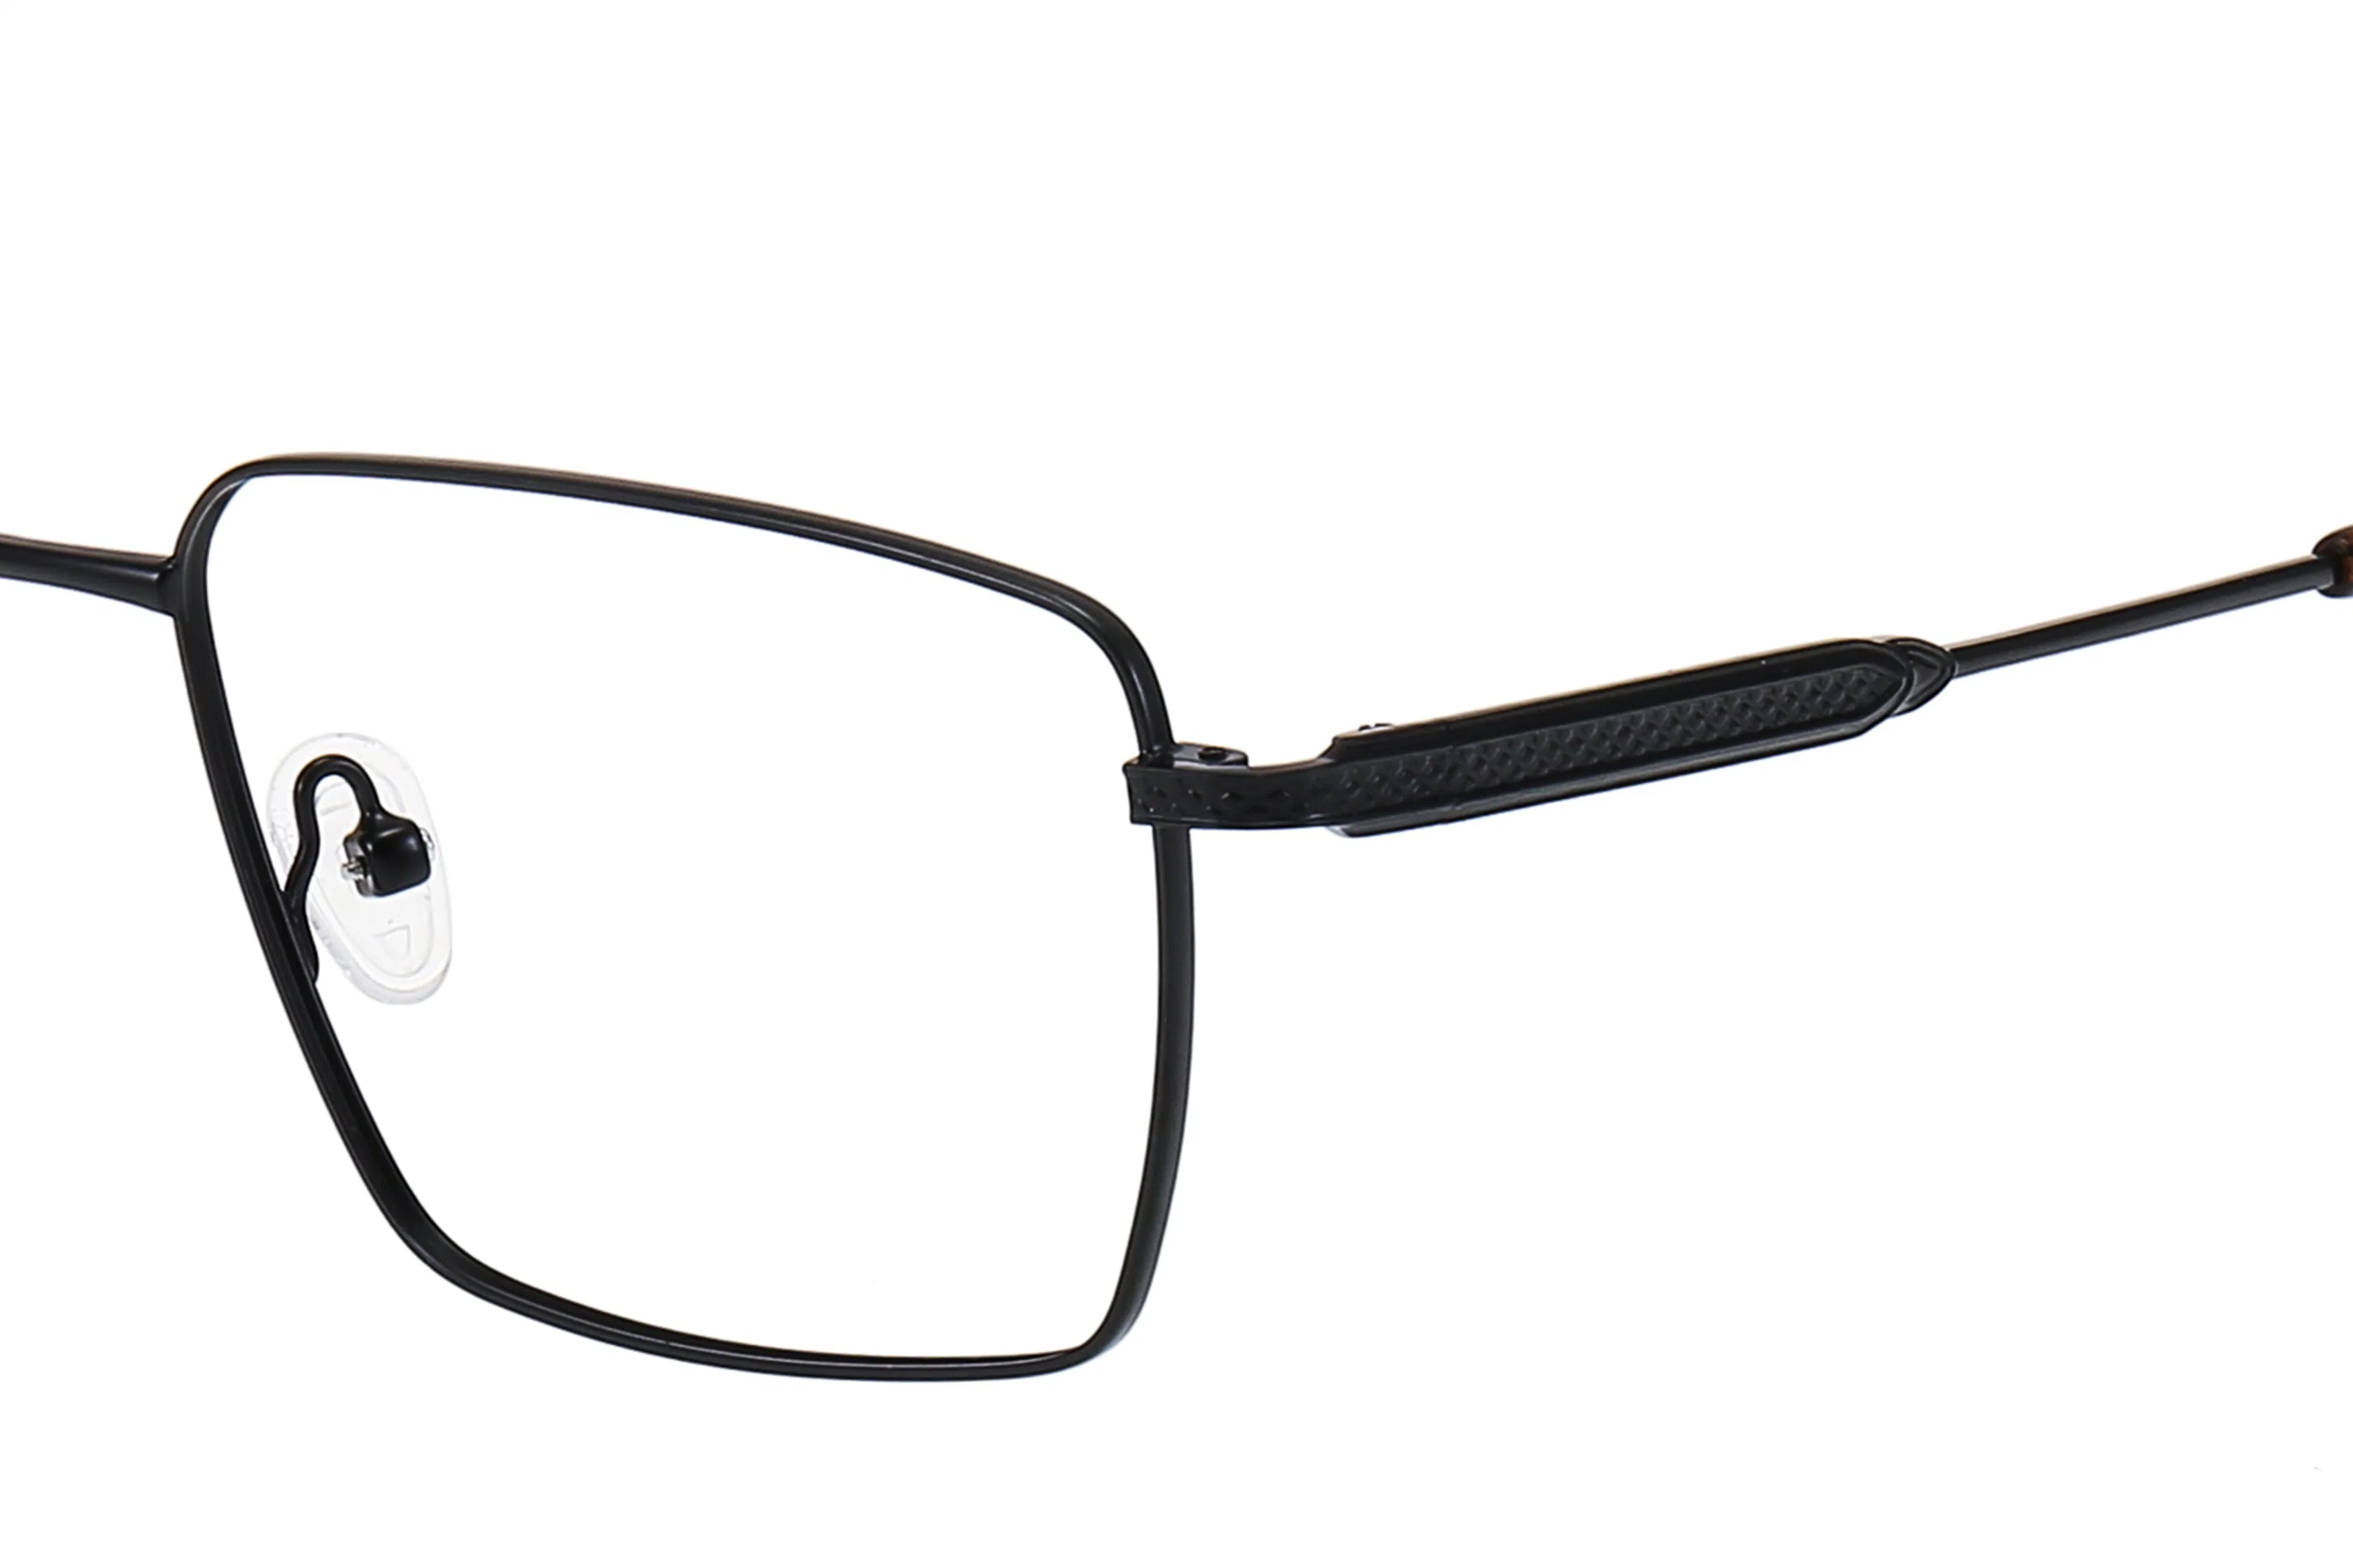 Last Design Rectangle Spectacles Metal Frame Eye Glasses Optic Frame